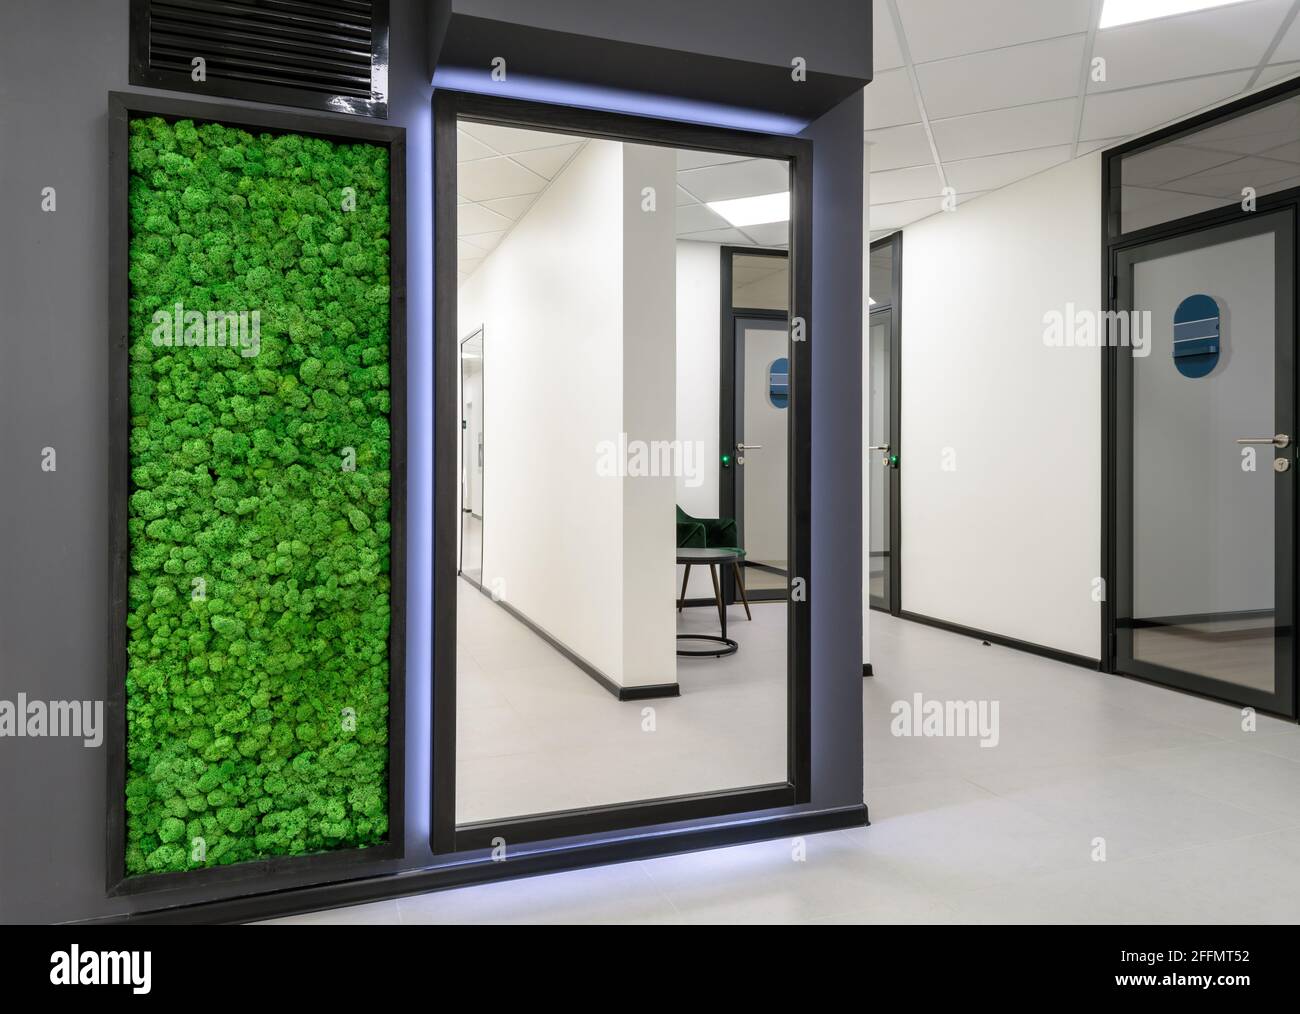 Büroeinrichtung mit vertikalem Garten. Grüne Mooswand im sauberen Flur des Geschäftsgebäudes. Minimalistisches Innendesign mit Spiegel und Landschaftsgestaltung. Stockfoto